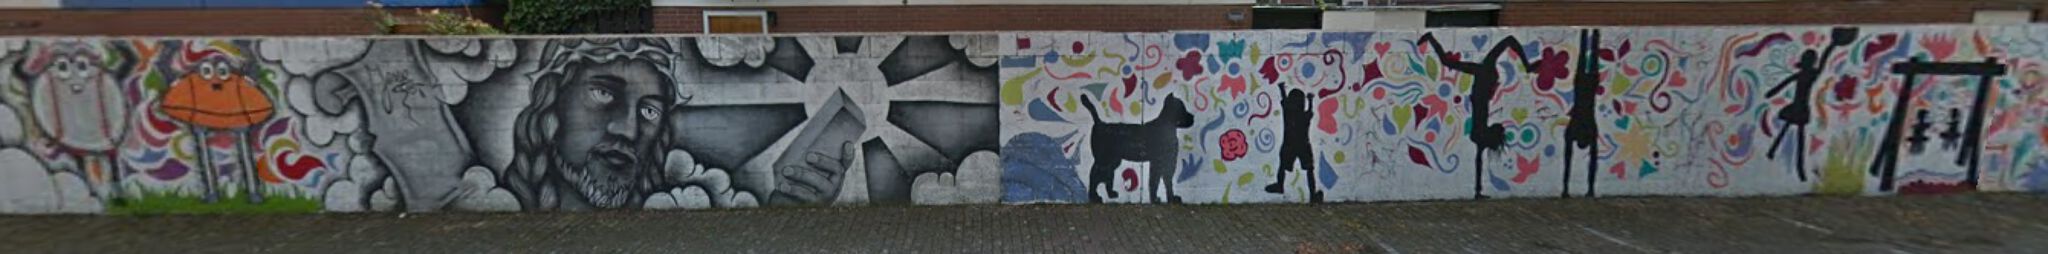 Unknown&mdash;Langste muurschildering in Utrecht